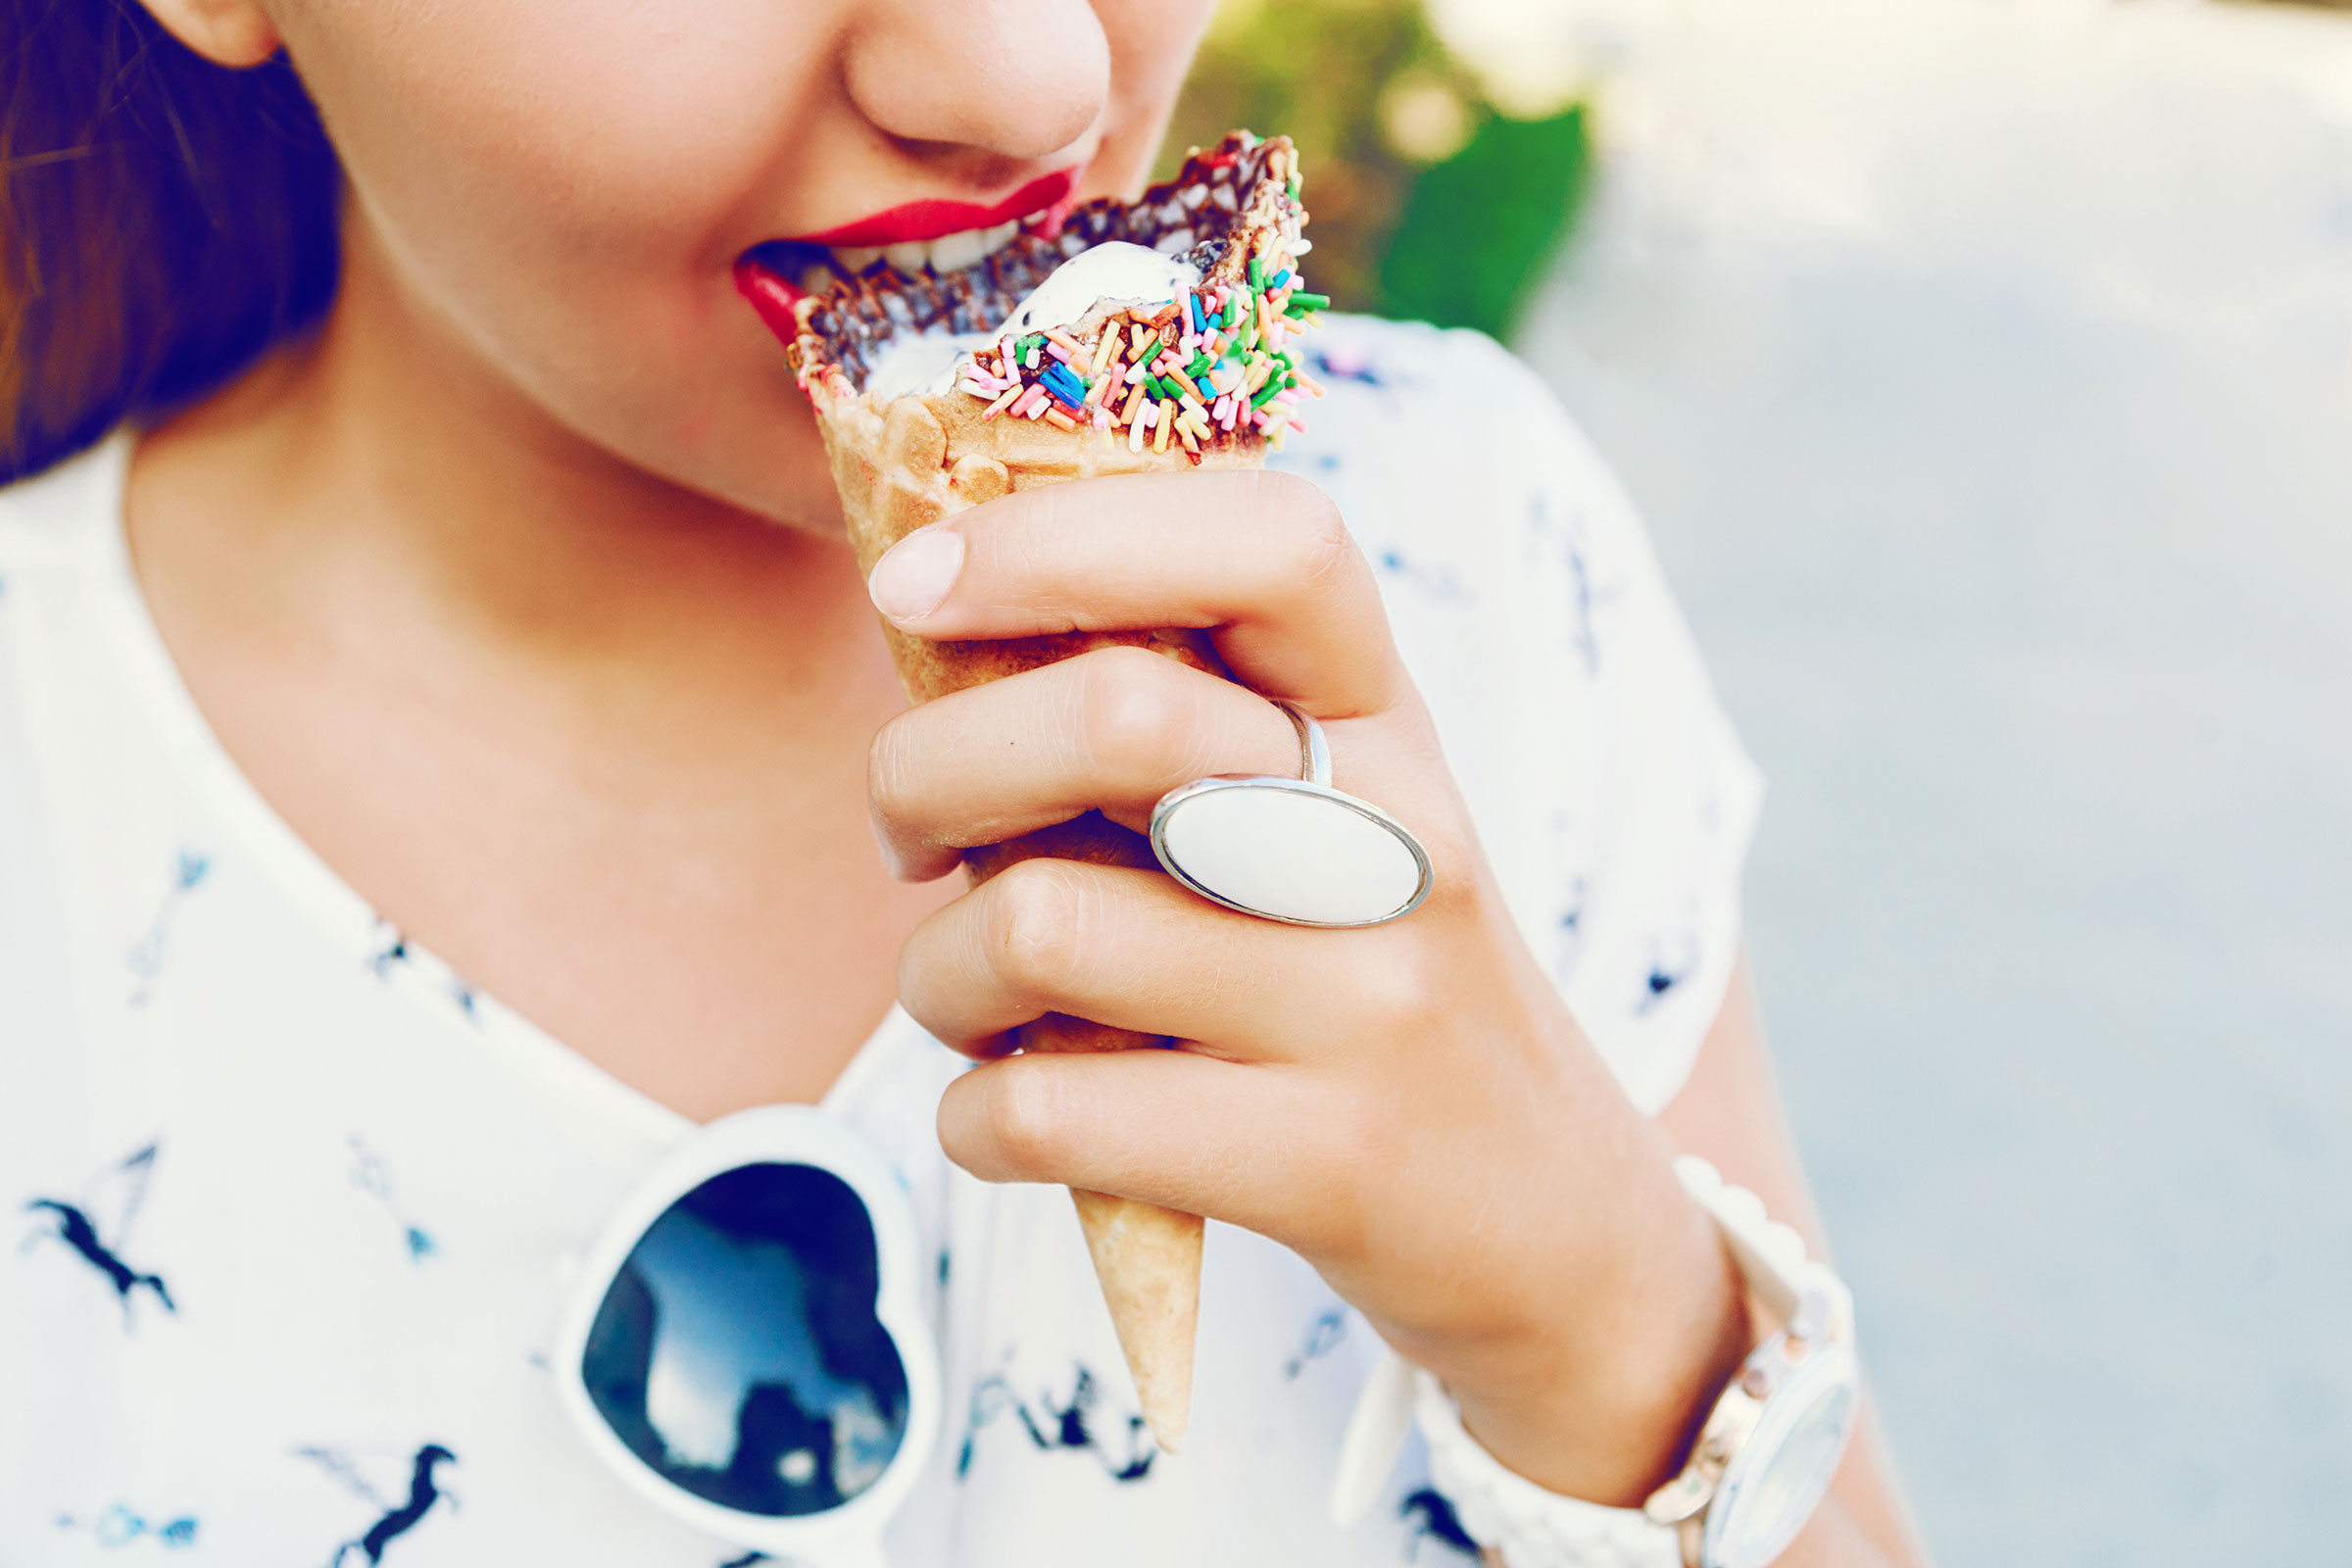 Вкусно ест мороженое. Ест мороженое. Девушка и мороженое. Кушать мороженое. Фотосессия с мороженым.